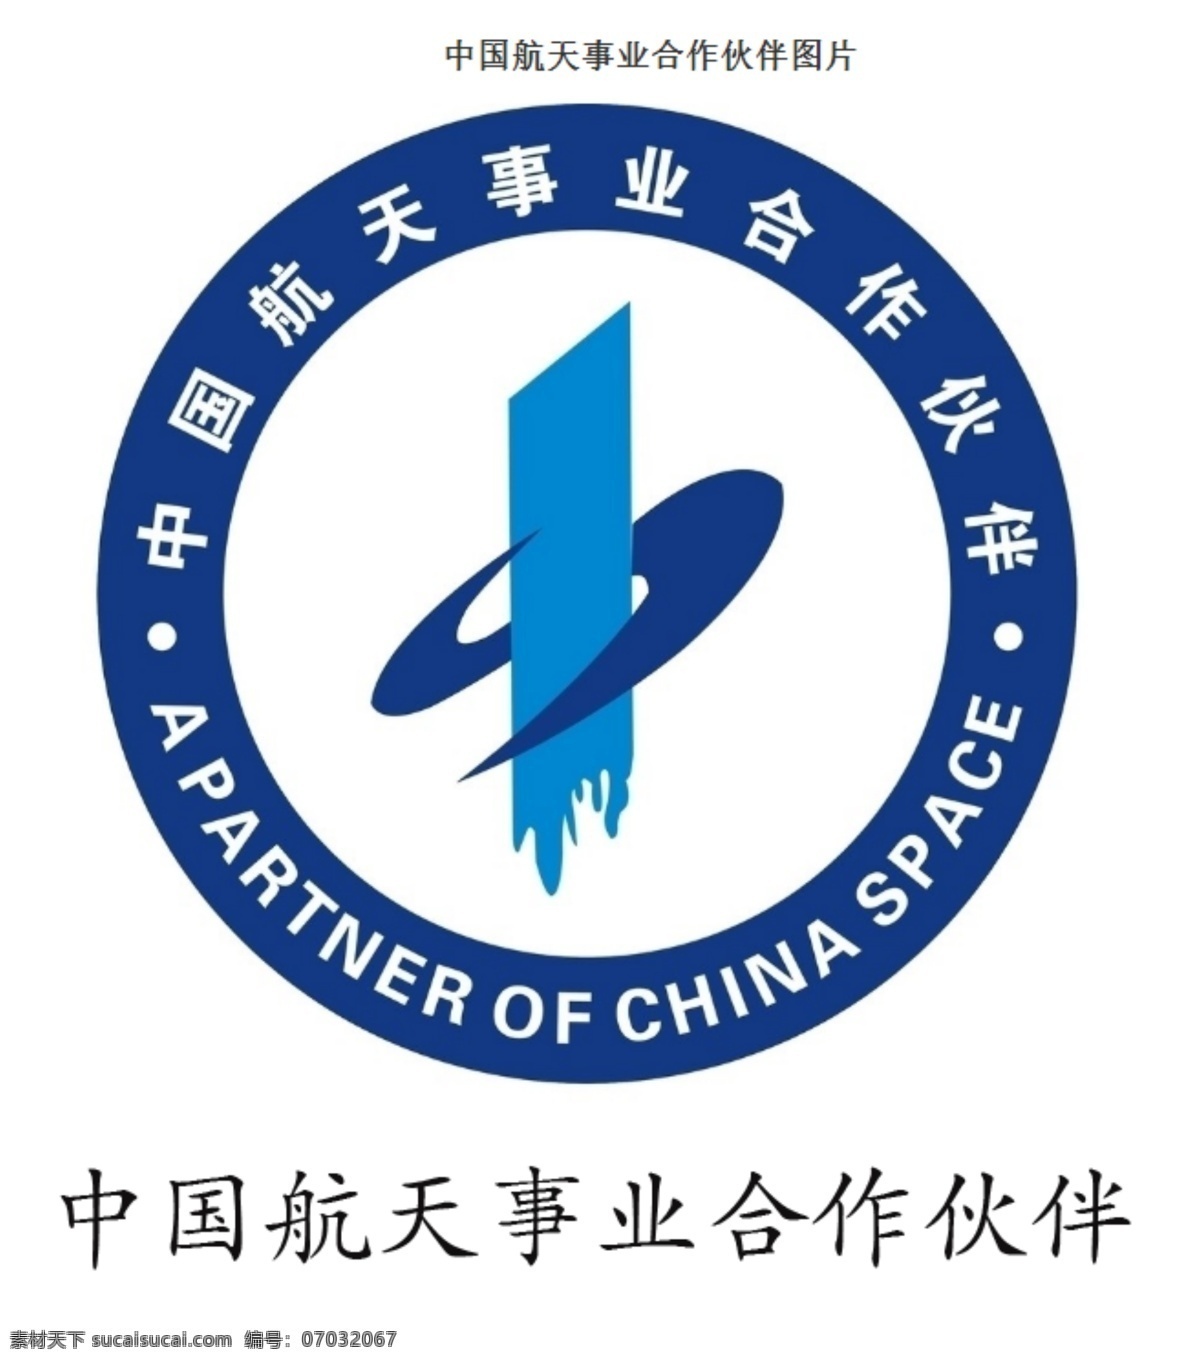 中国航天 事业 合作伙伴 新时代 国珍生活馆 航天事业合作 店内装修 标志图标 其他图标